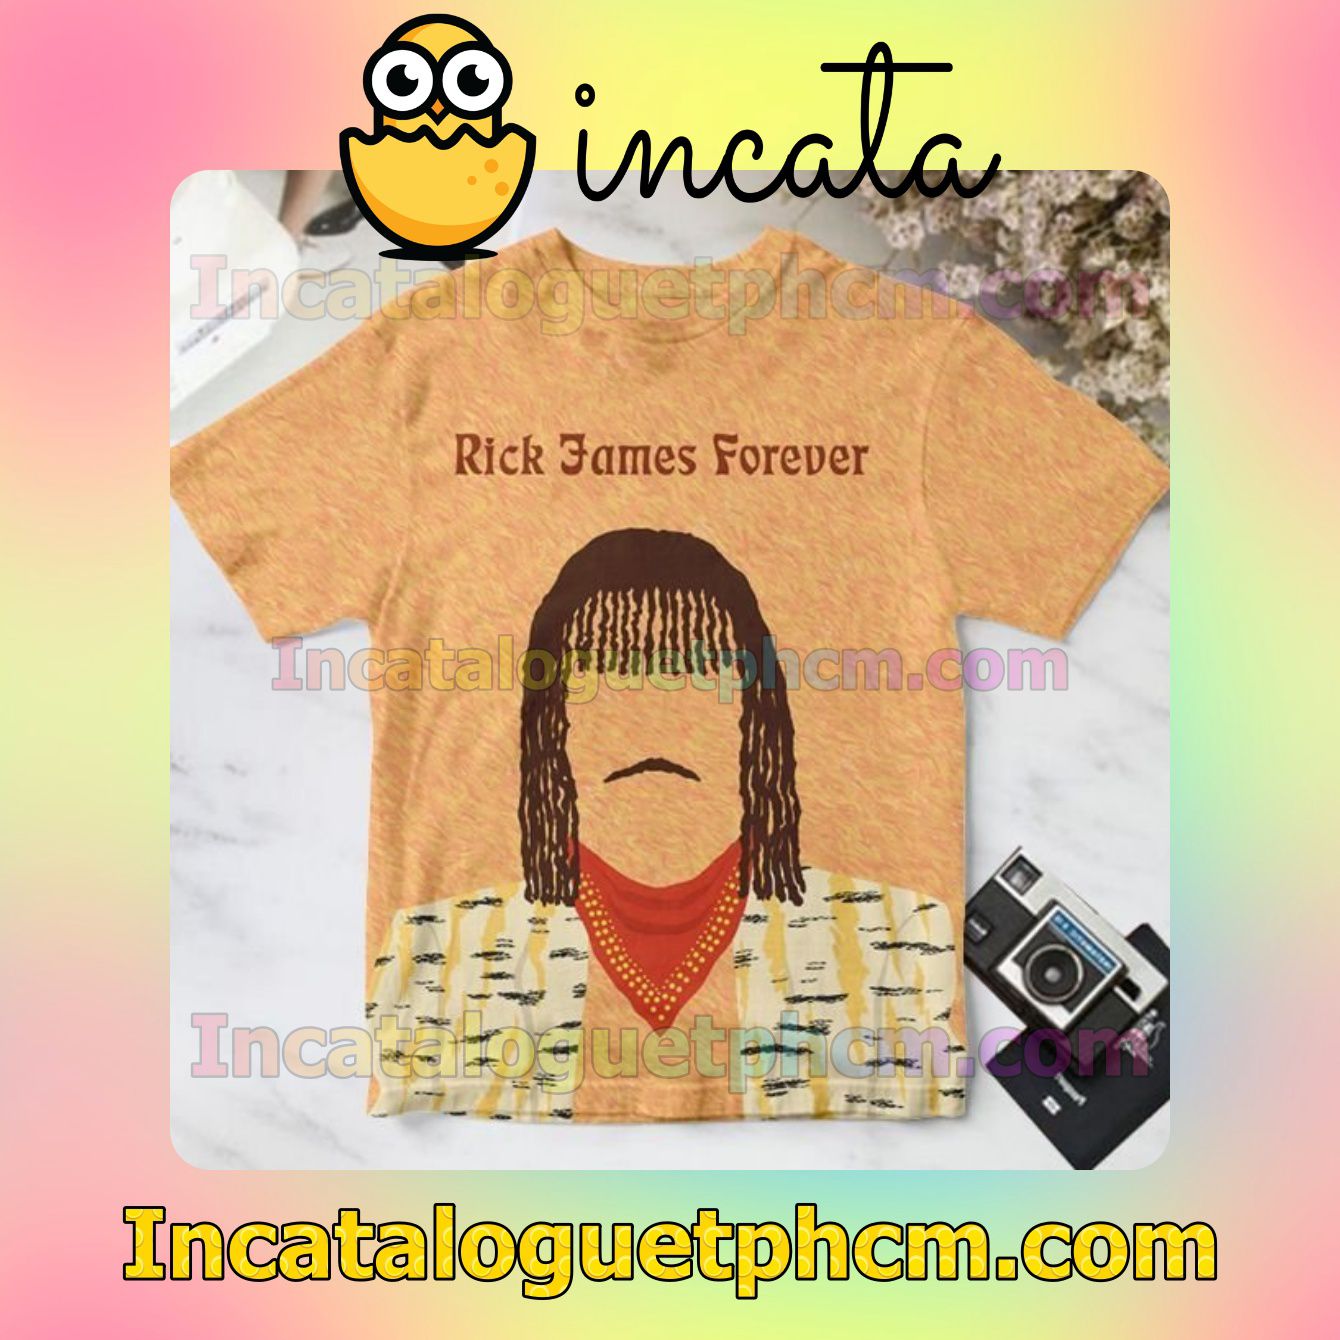 Rick James Forever Album Cover For Fan Shirt